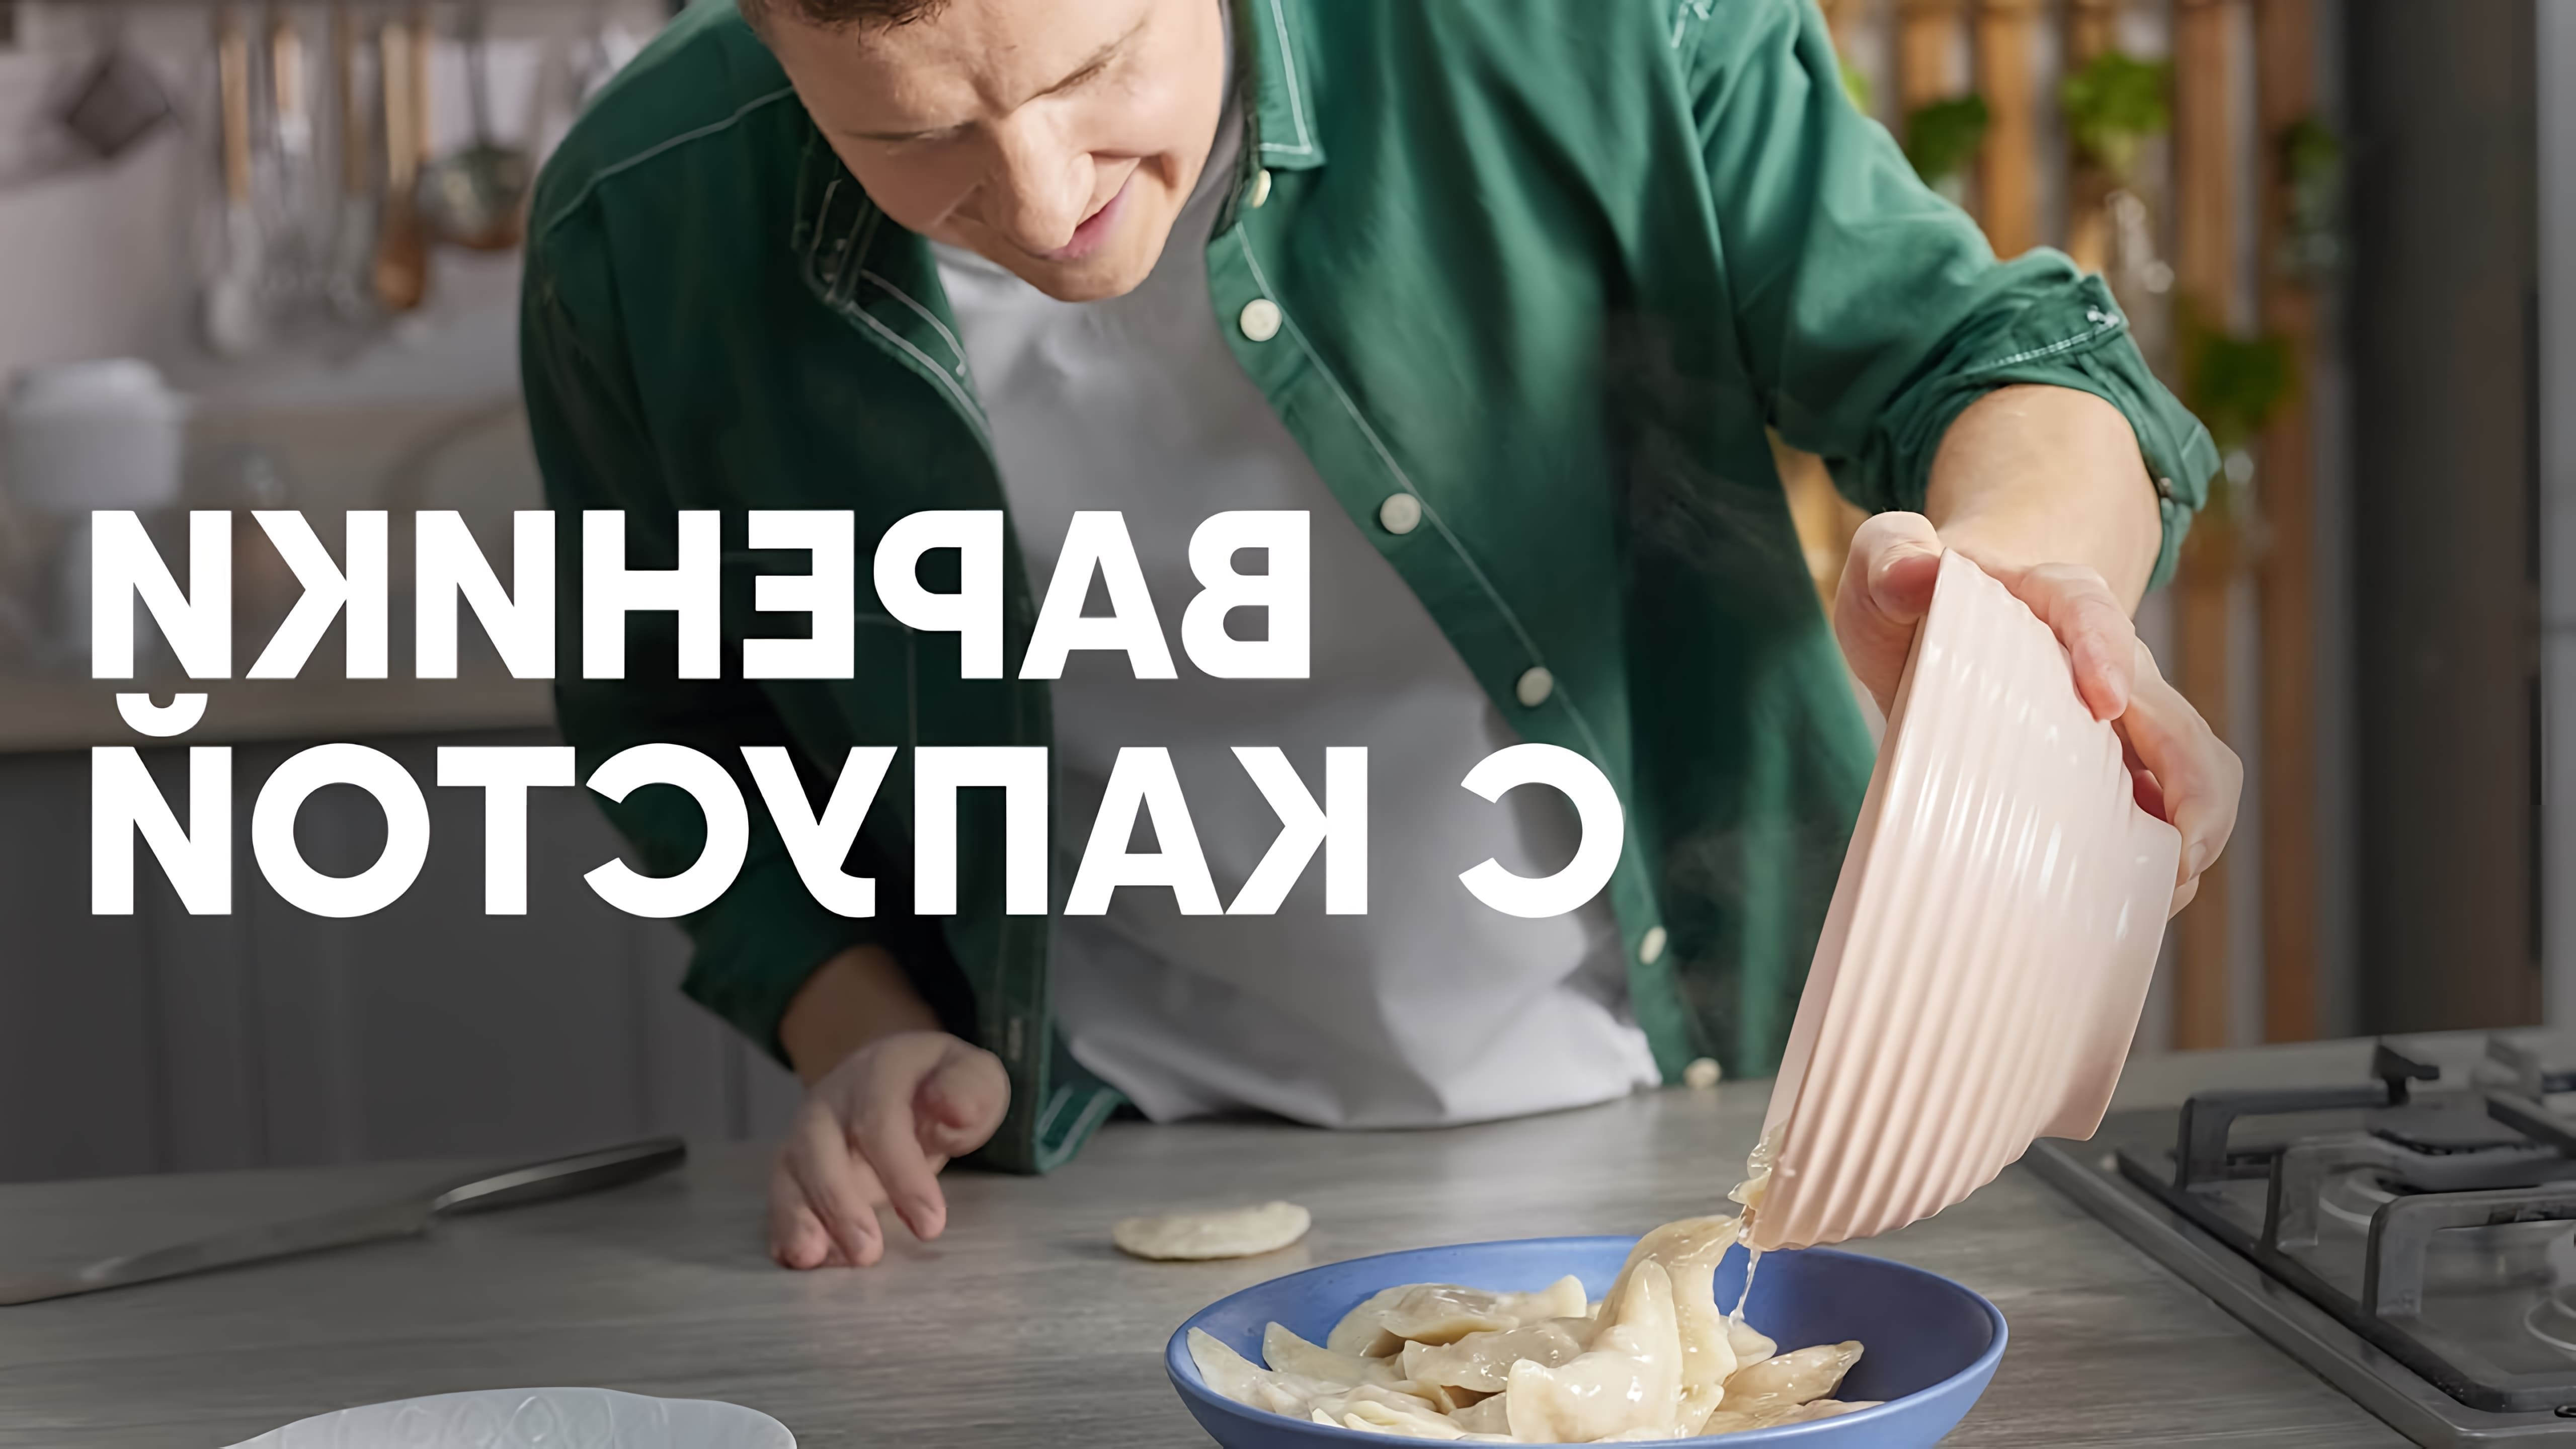 В этом видео шеф-повар Белькович показывает, как приготовить вареники с кислой капустой